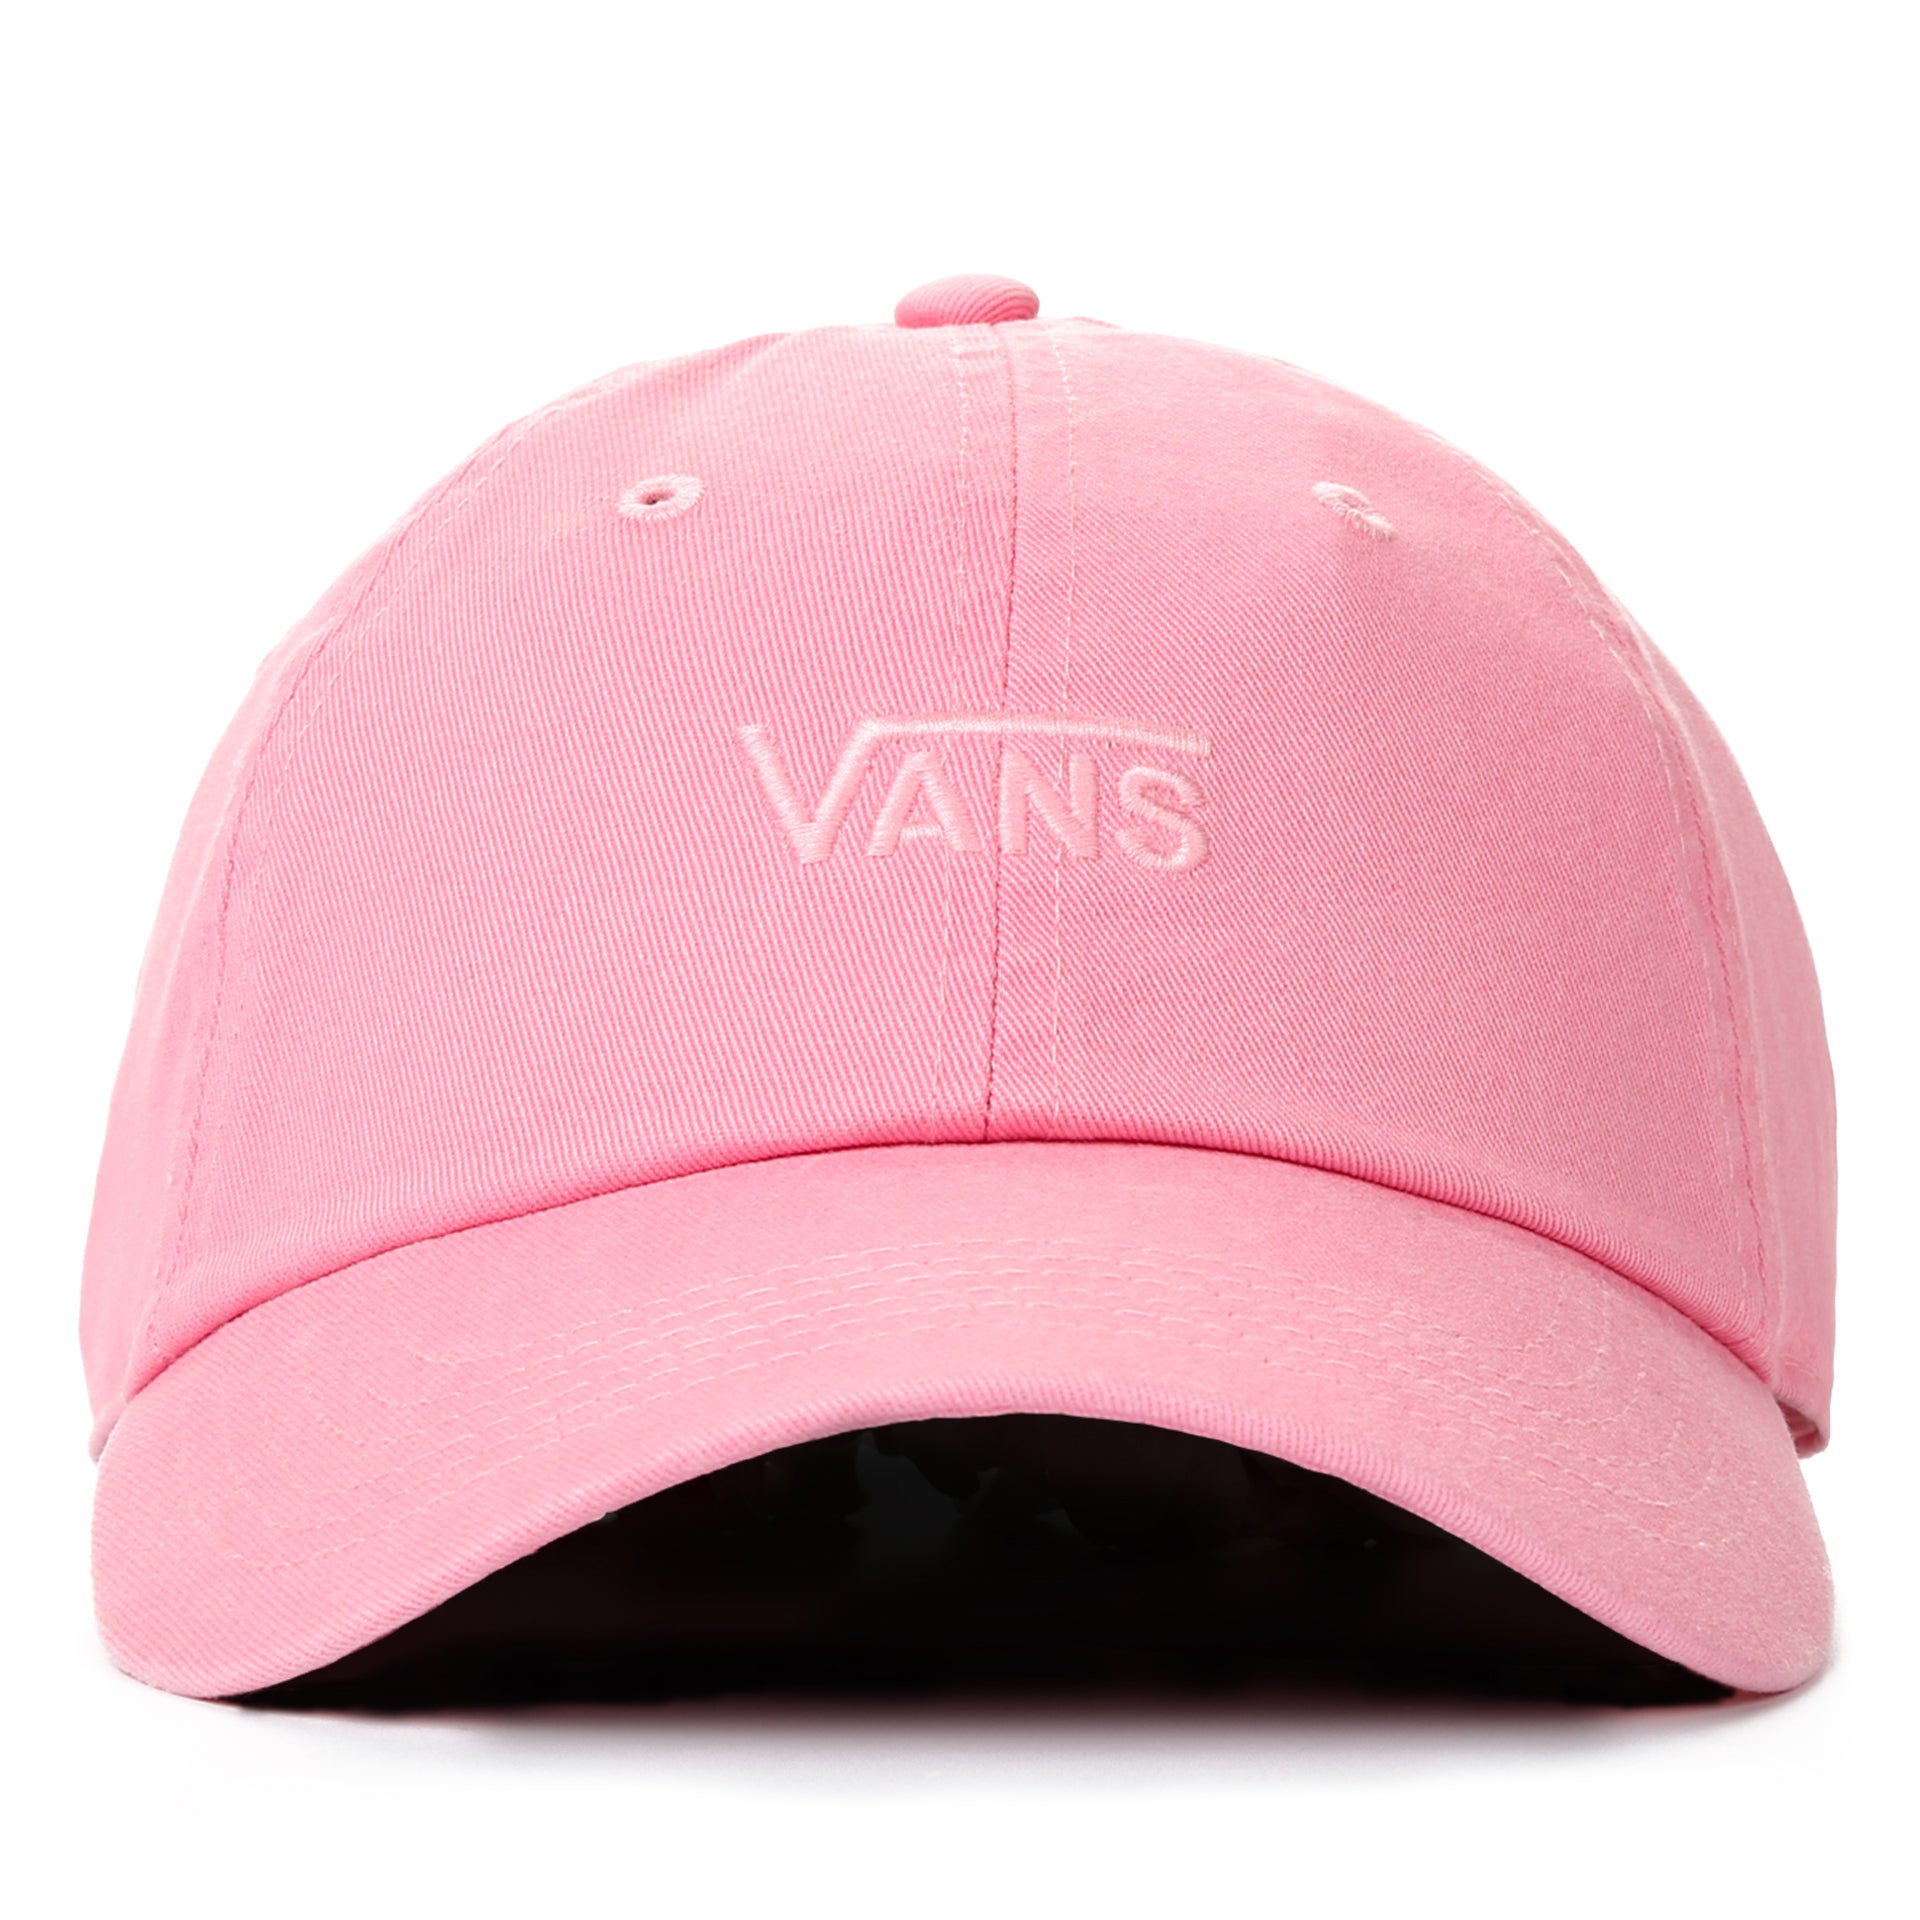 vans pink cap